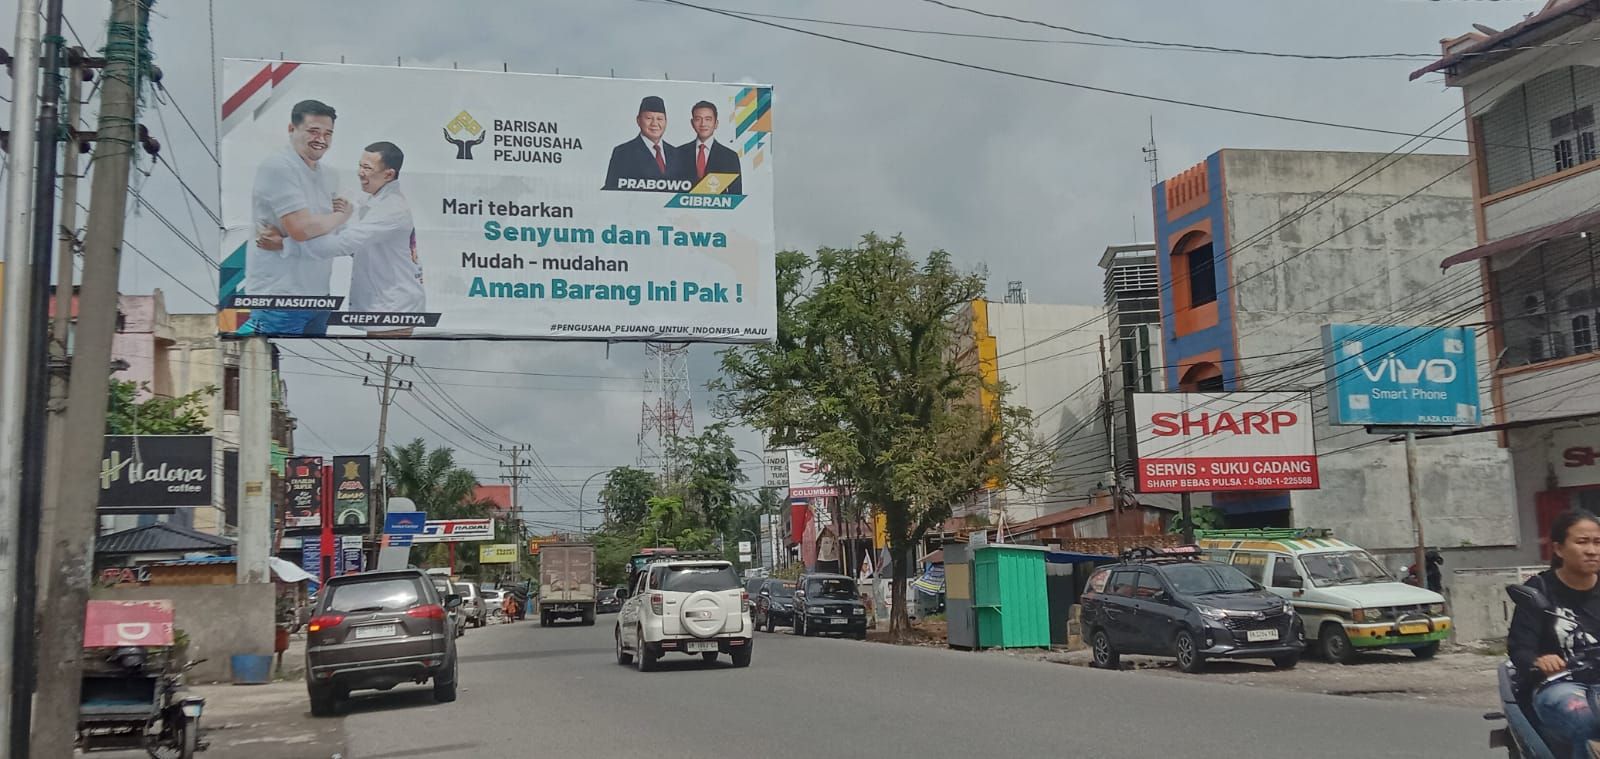 Sebanyak dua tokoh muda lokal Sumatera Utara tampil dalam sejumlah media luar di inti kota Rantauprapat.